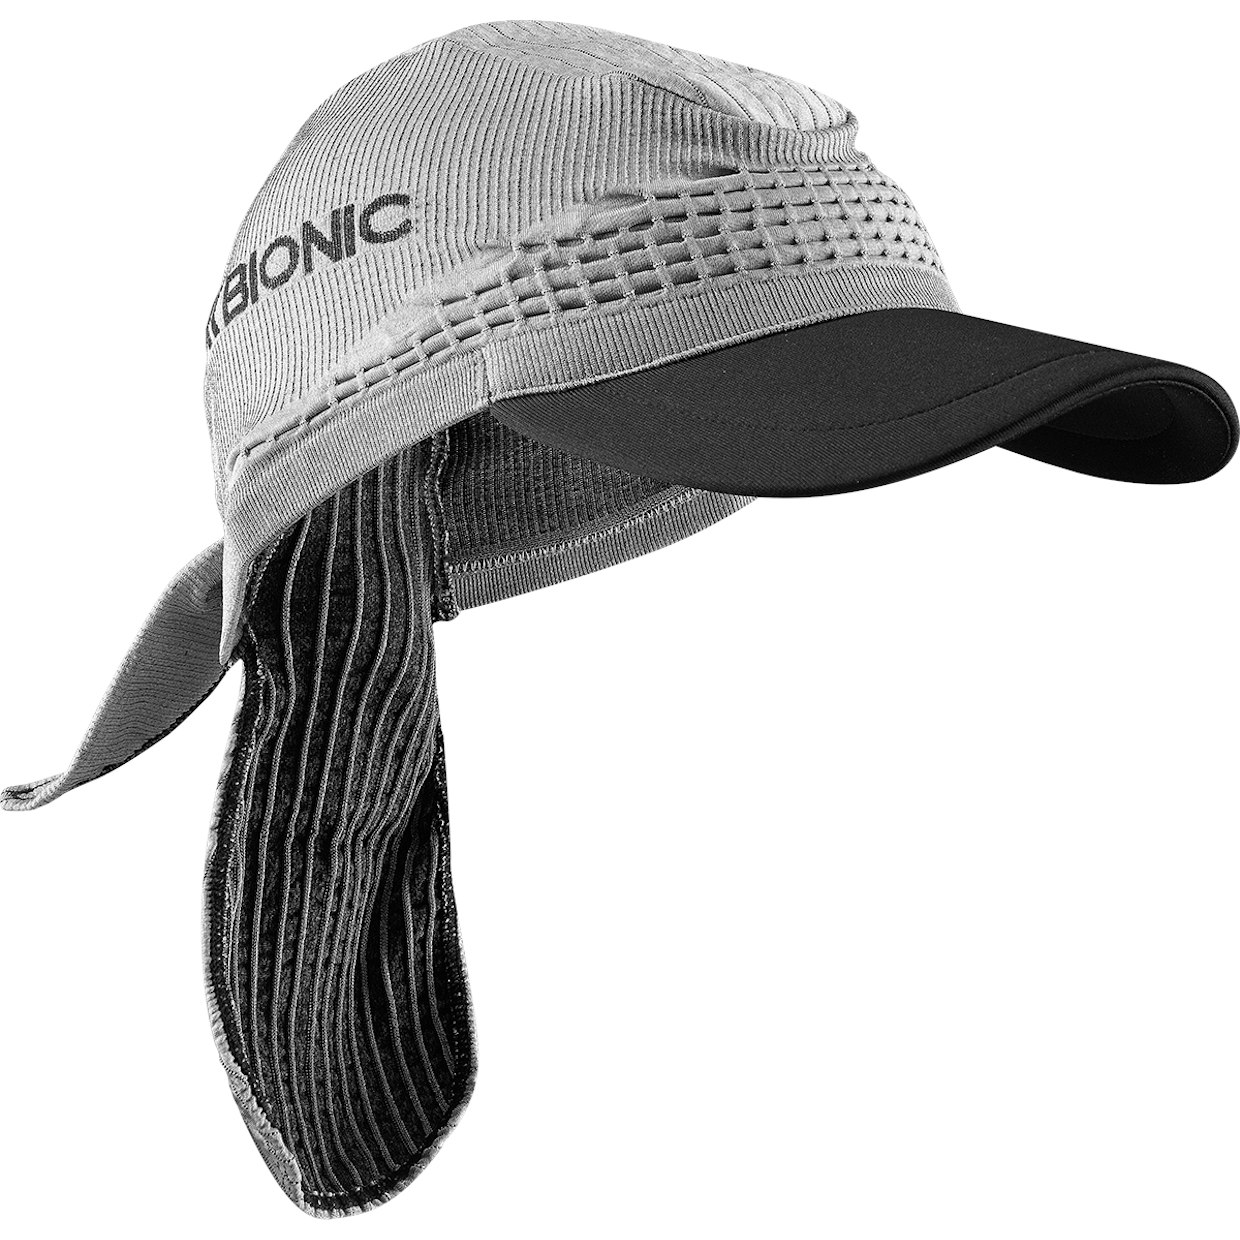 Produktbild von X-Bionic Fennec 4.0 Schildmütze - anthracite/silver